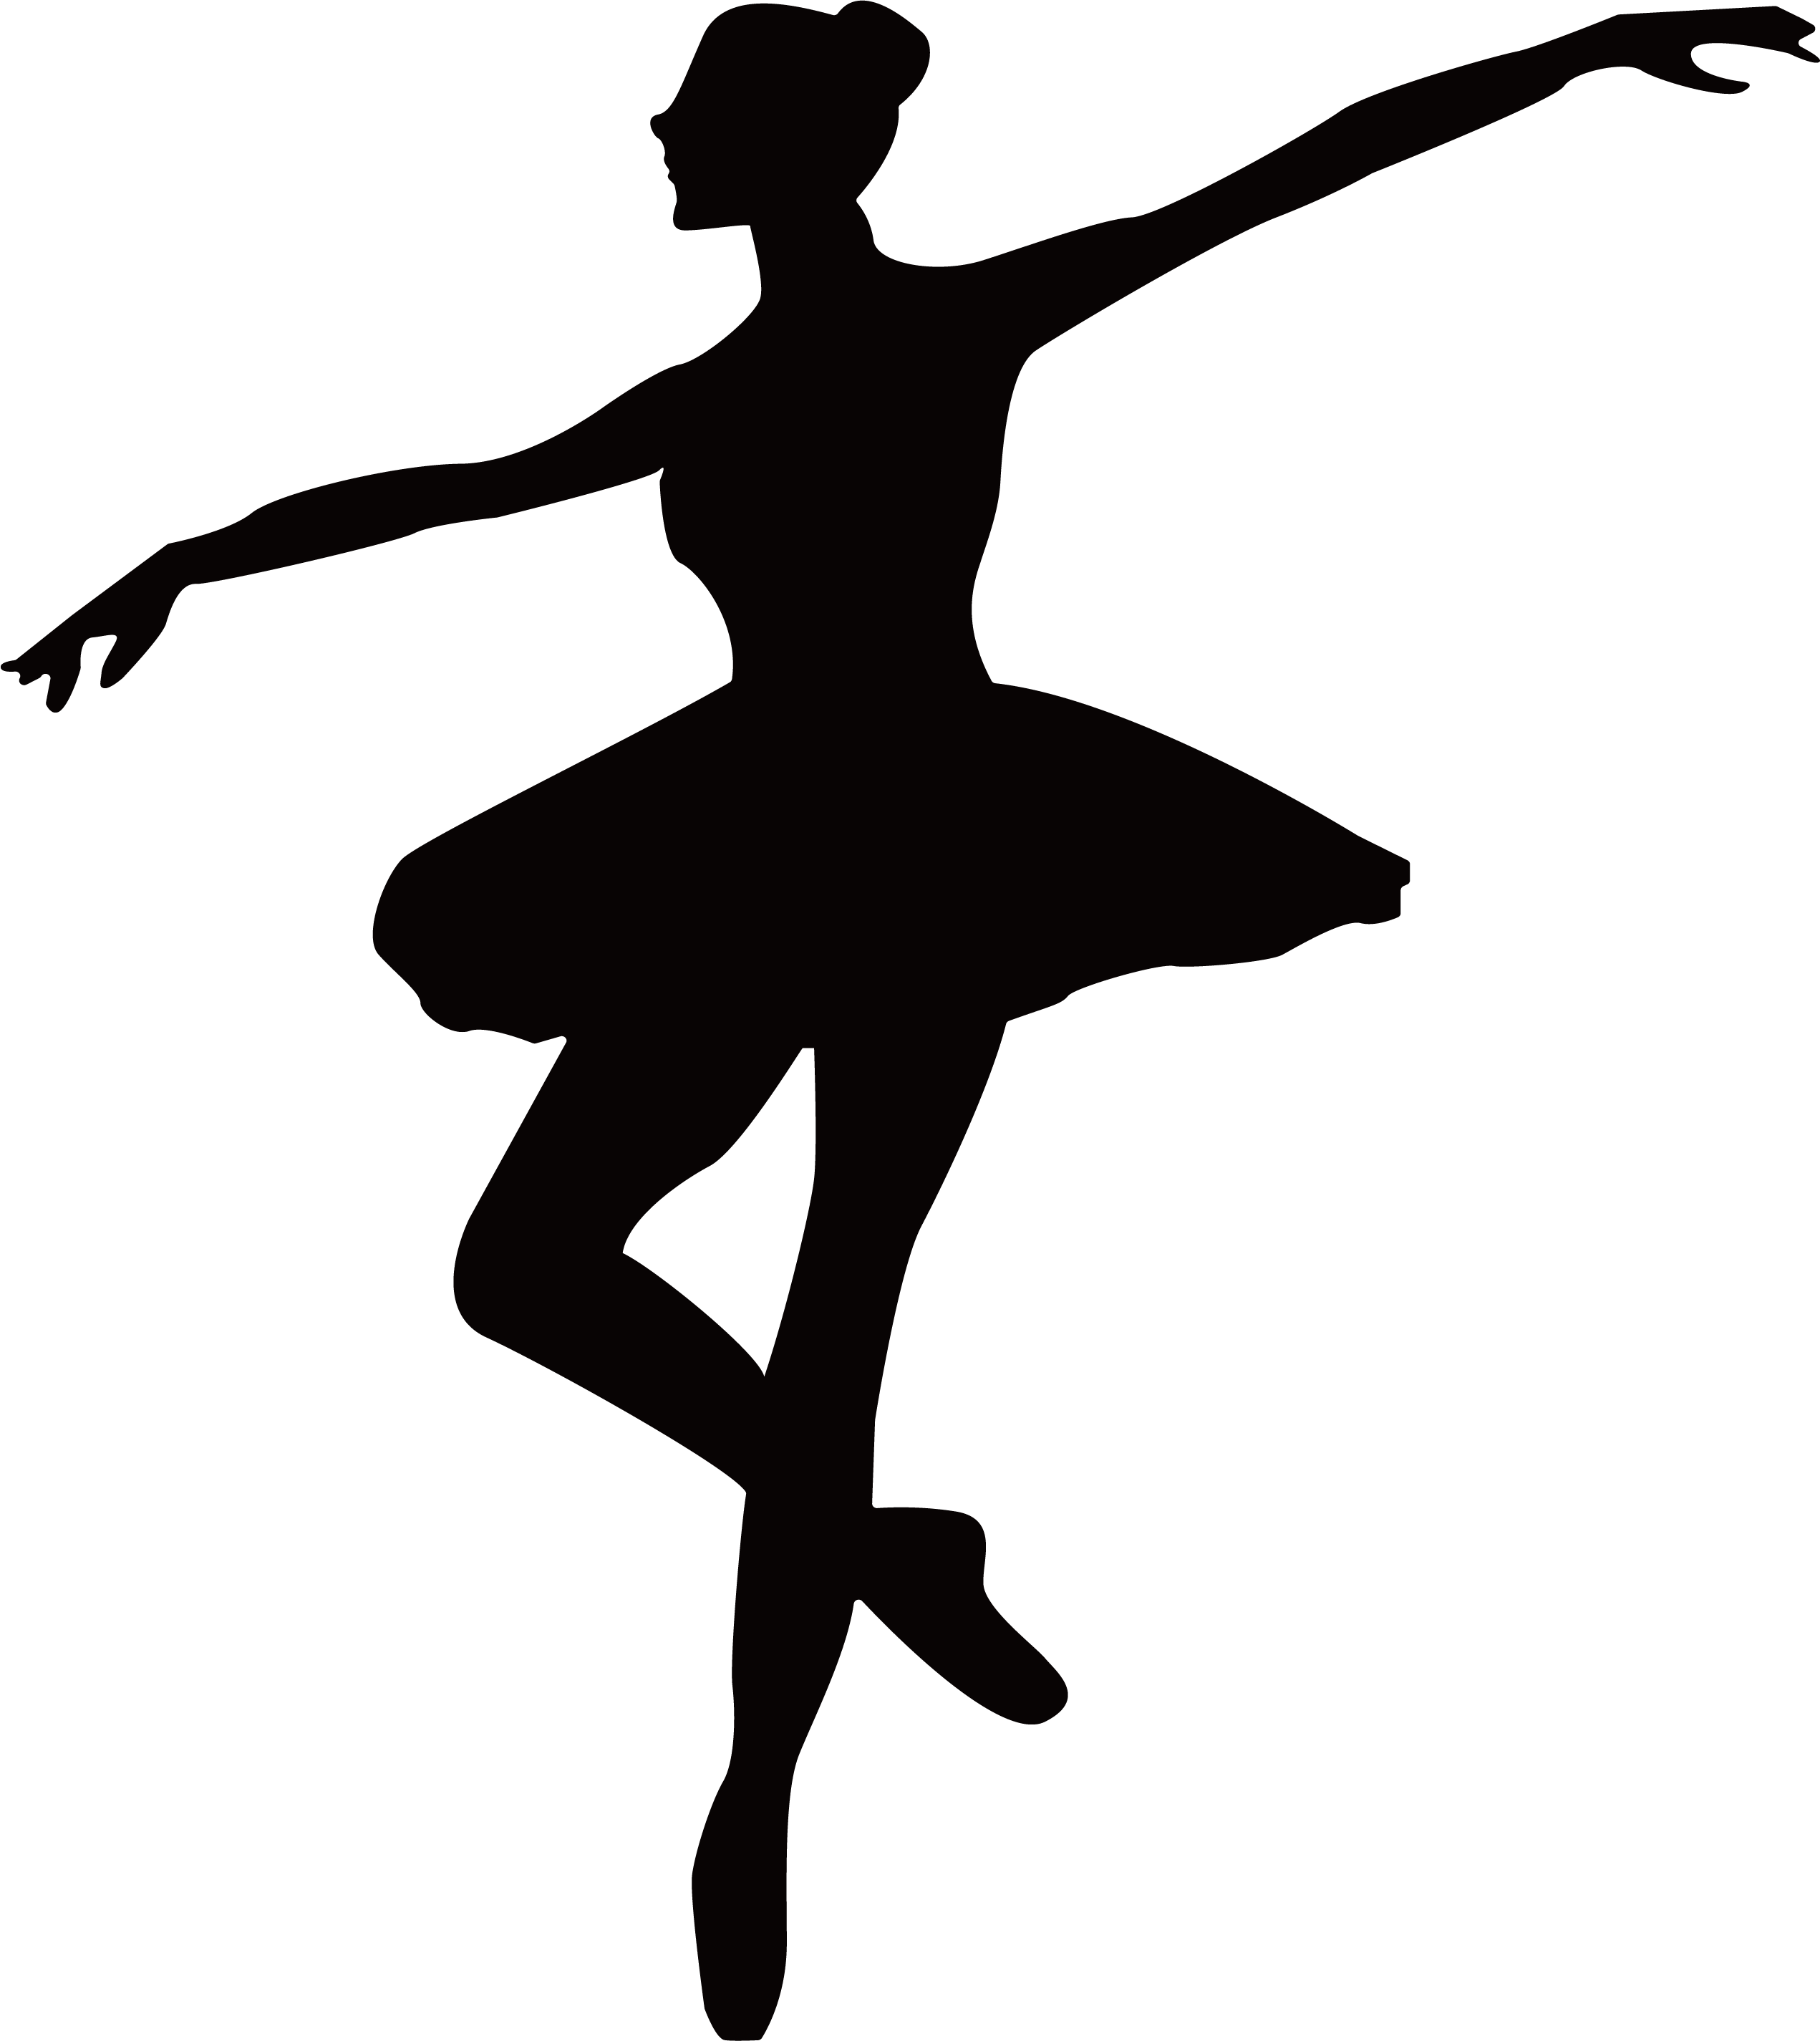 Ballet Dancer Silhouette The Ballet Dancer png download 2542*2850